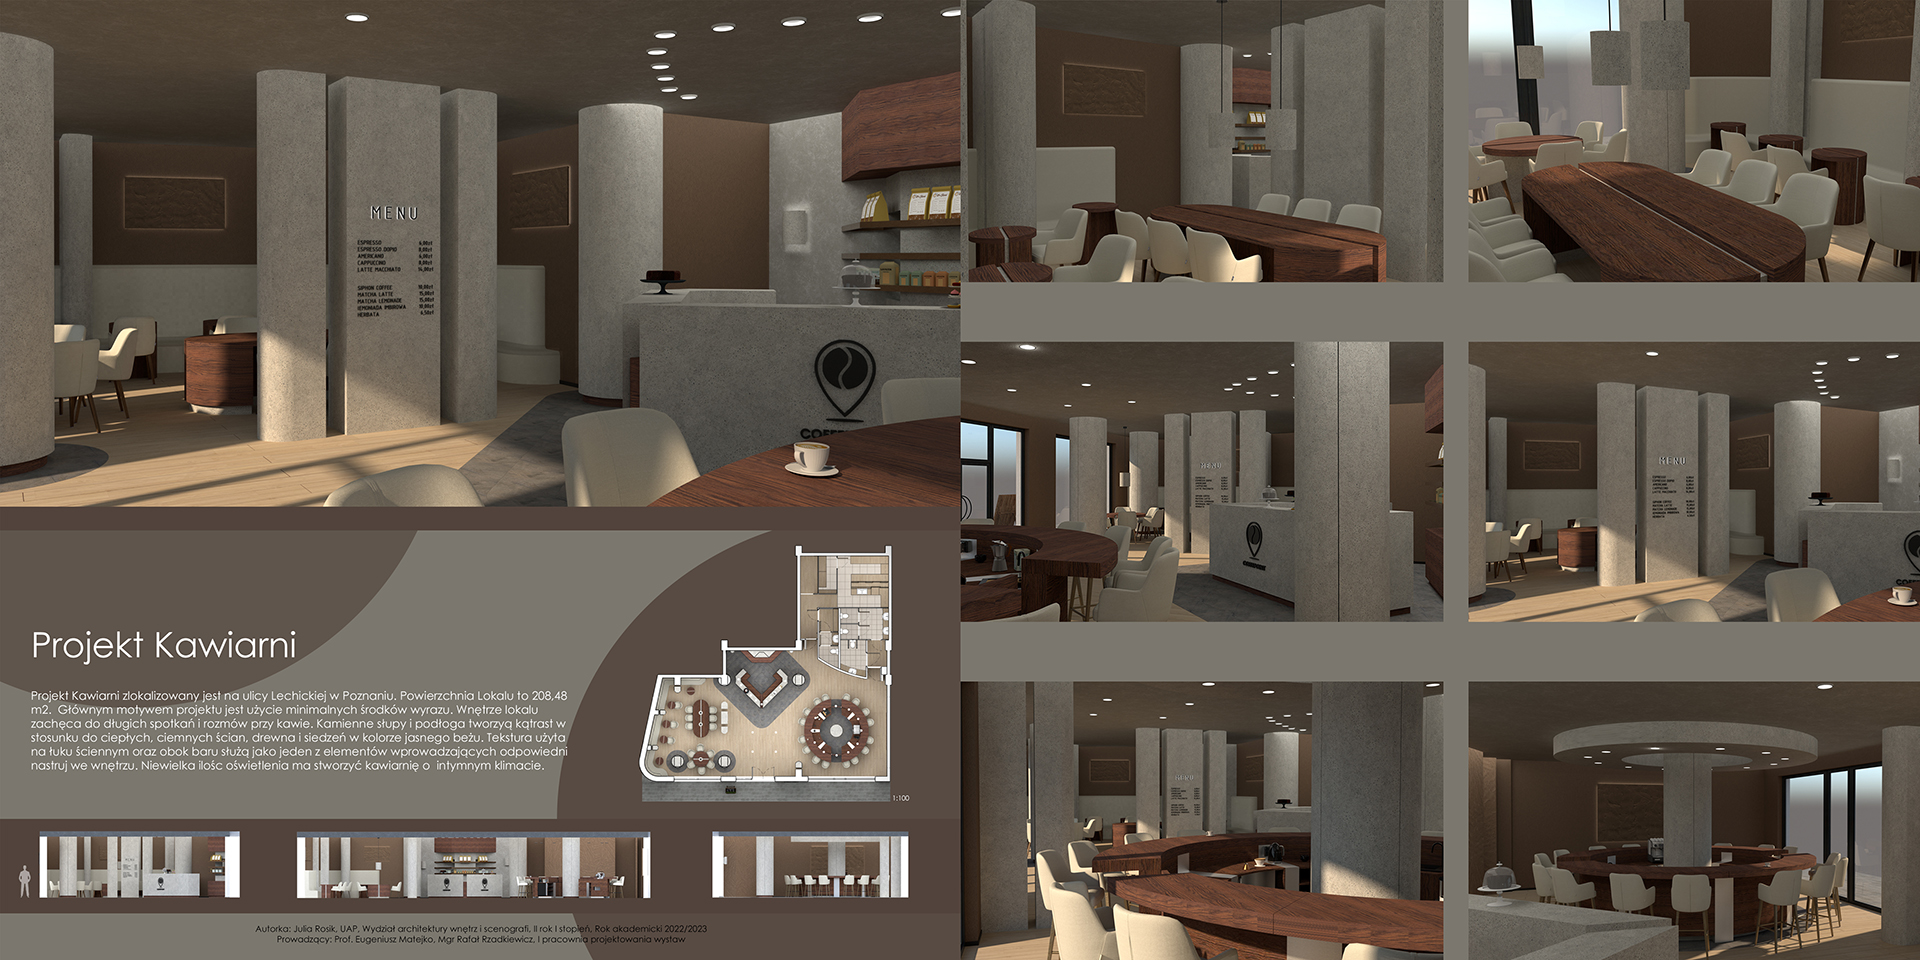 07. Plansza prezentuje projekt kawiarni. Pozioma kompozycja planszy podzielona na dwie części. Po lewej widzimy jedną wizualizację wraz z opisem projektu. Po prawej przedstawione są różne ujęcia kawiarni z widokiem na bar, stoliki. 